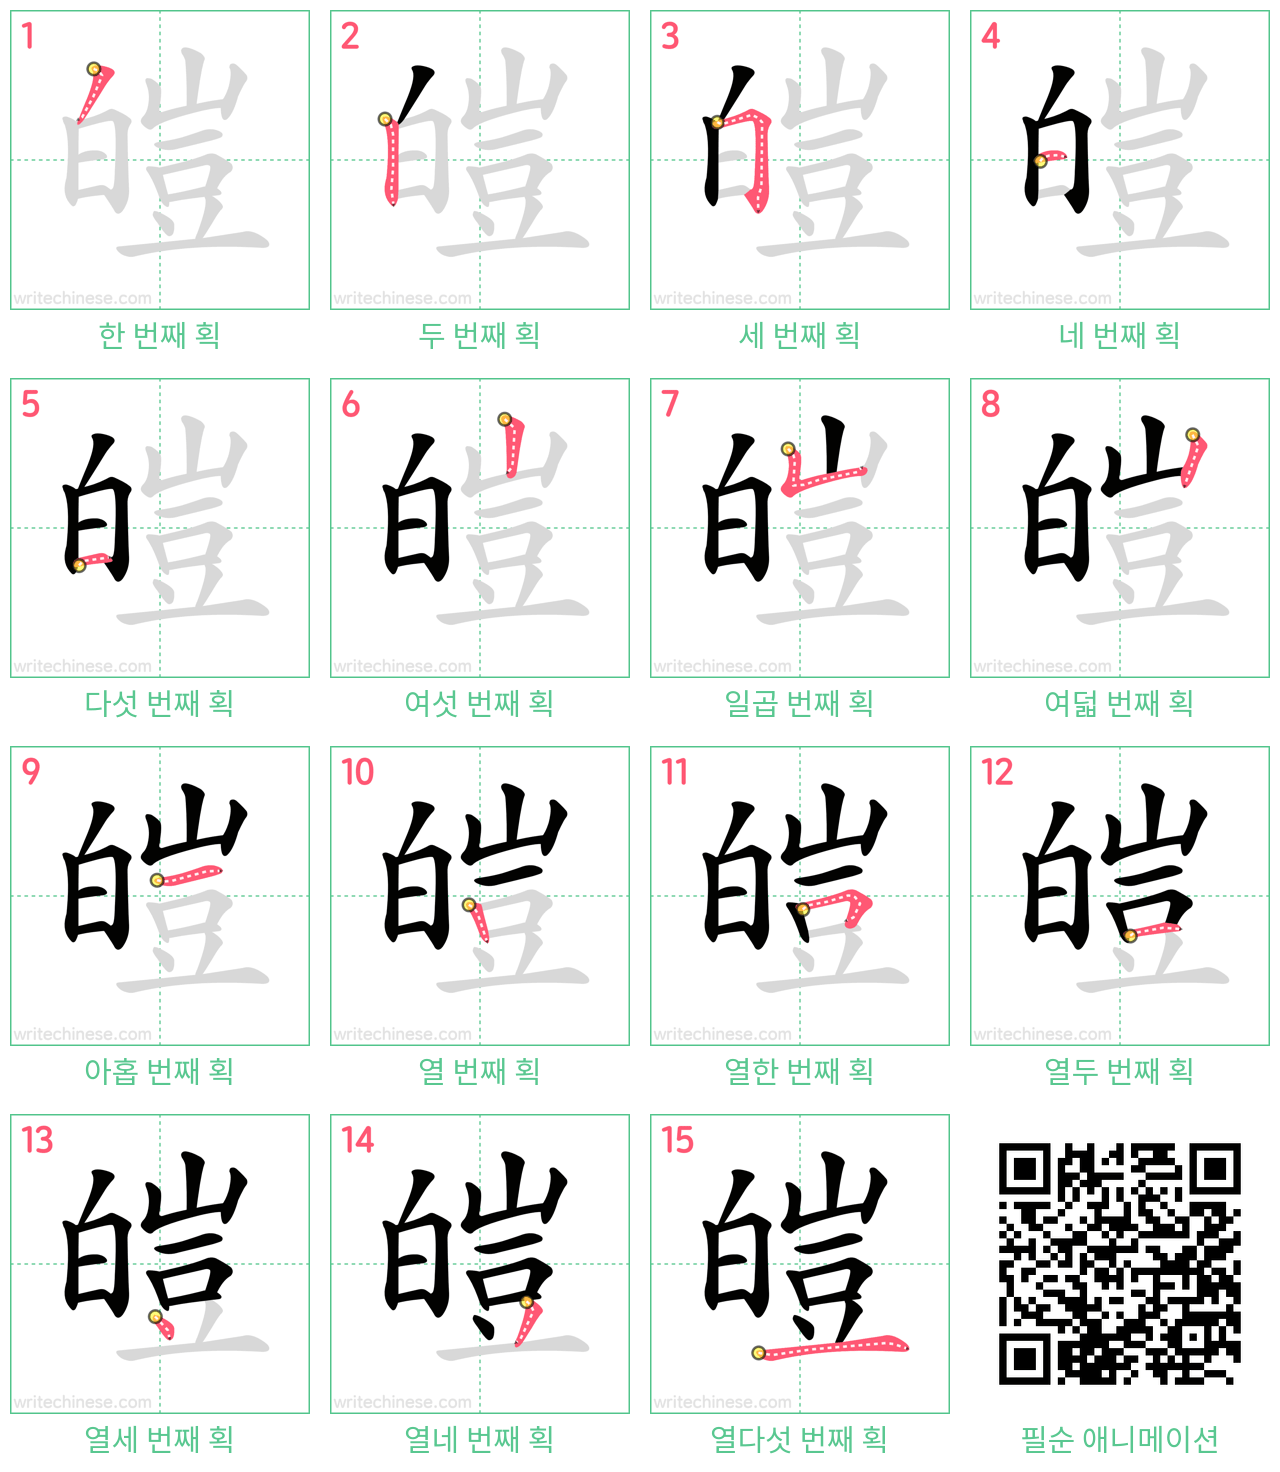 皚 step-by-step stroke order diagrams